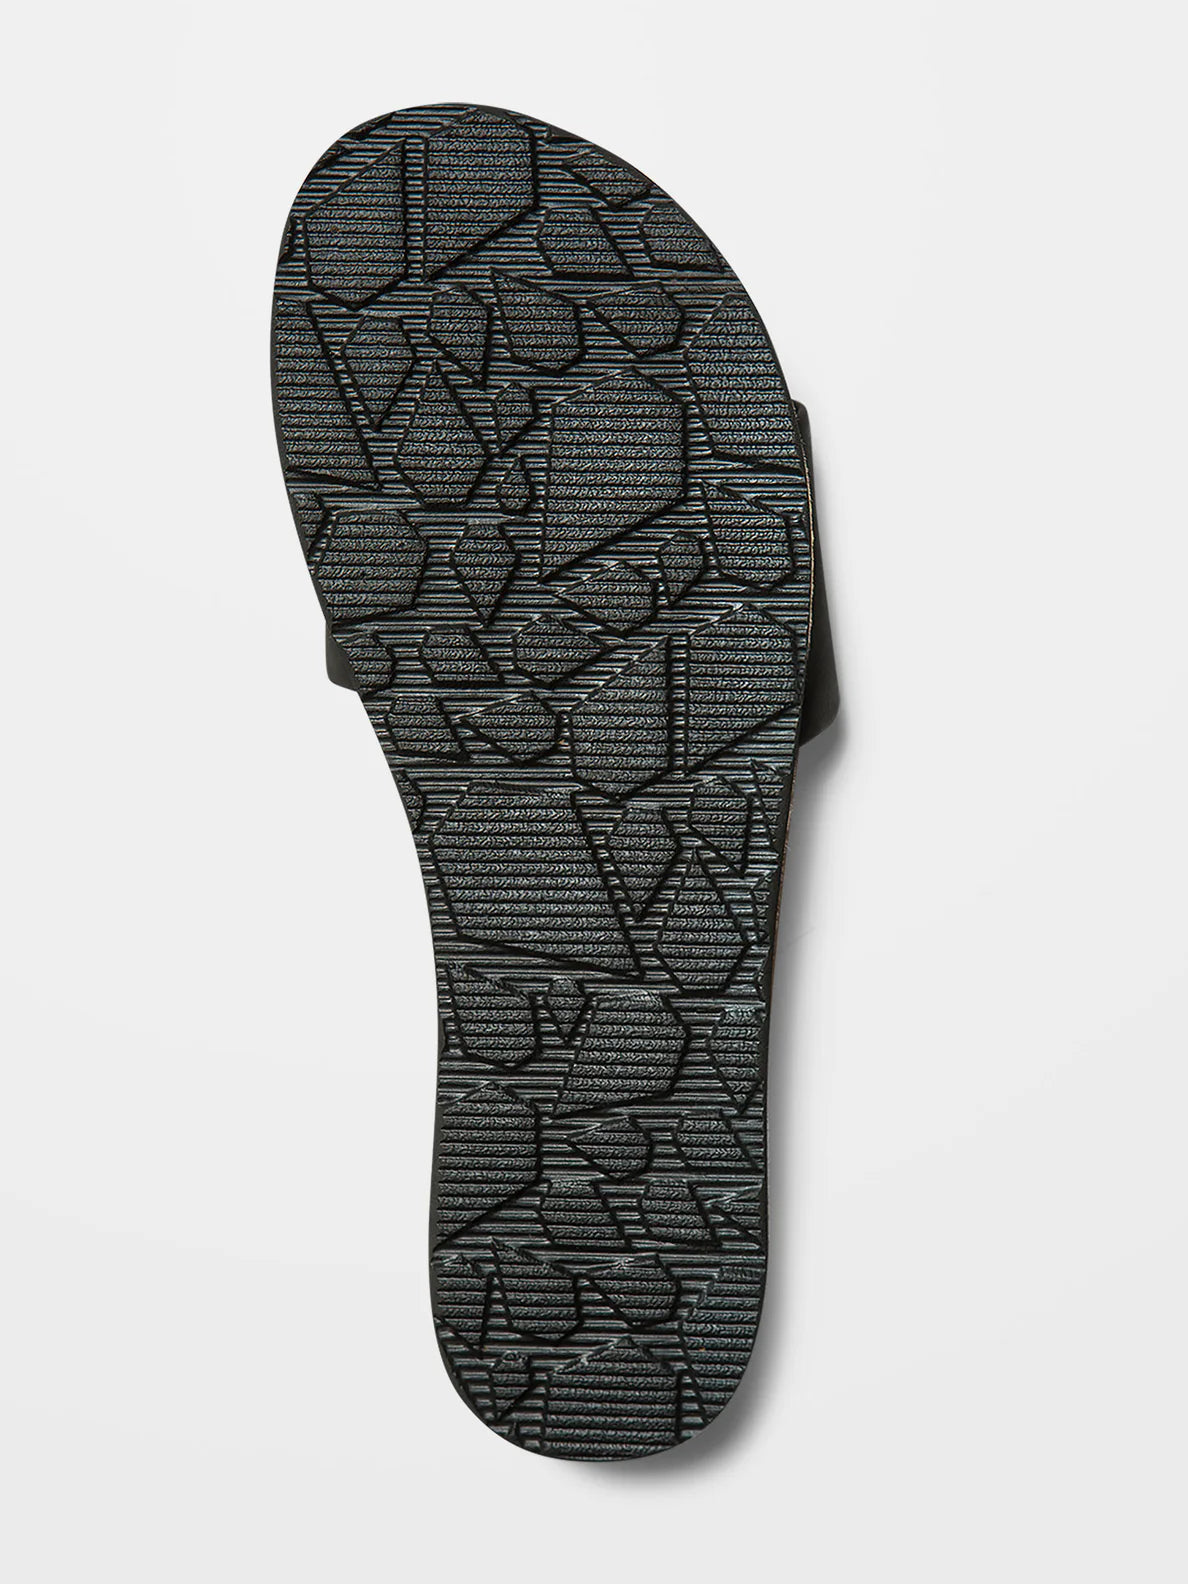 Simple slide slipper black - Volcom